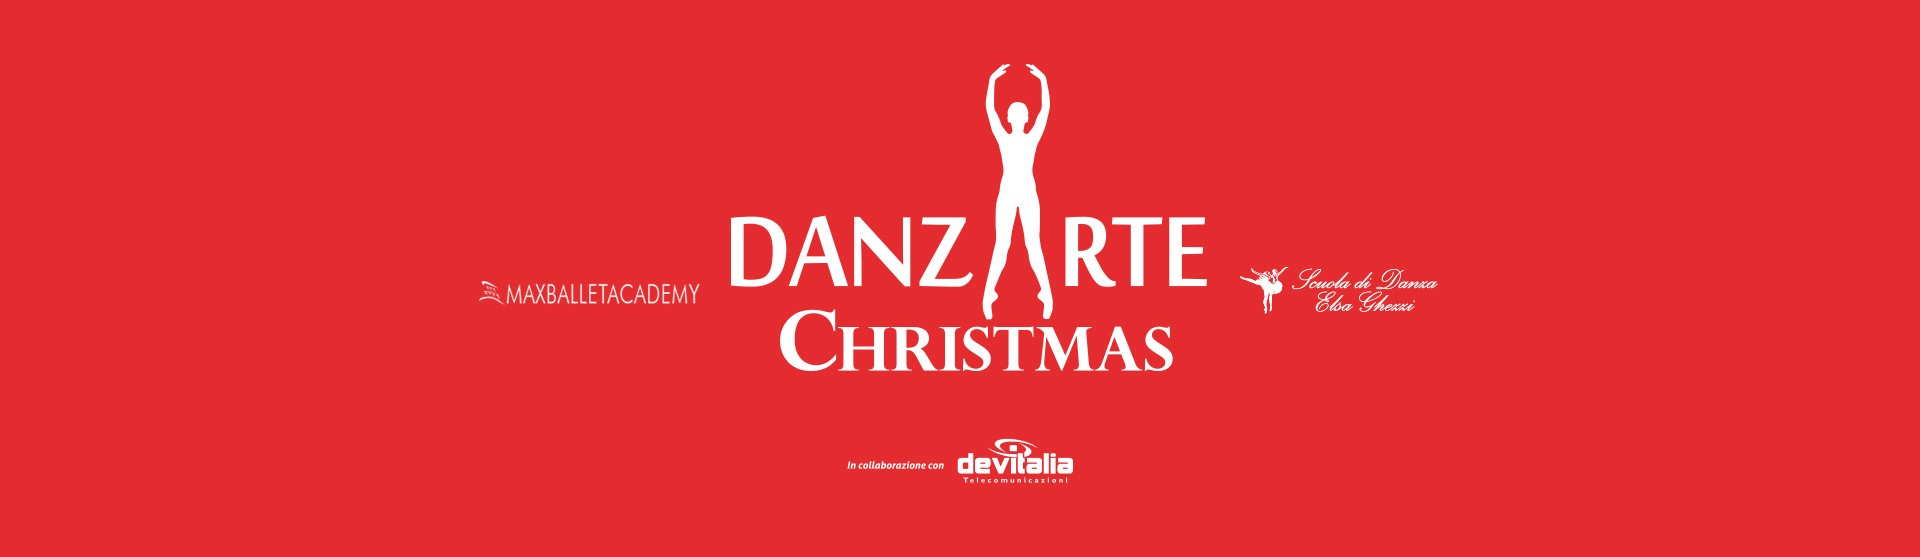 DanzArte Christmas 2017